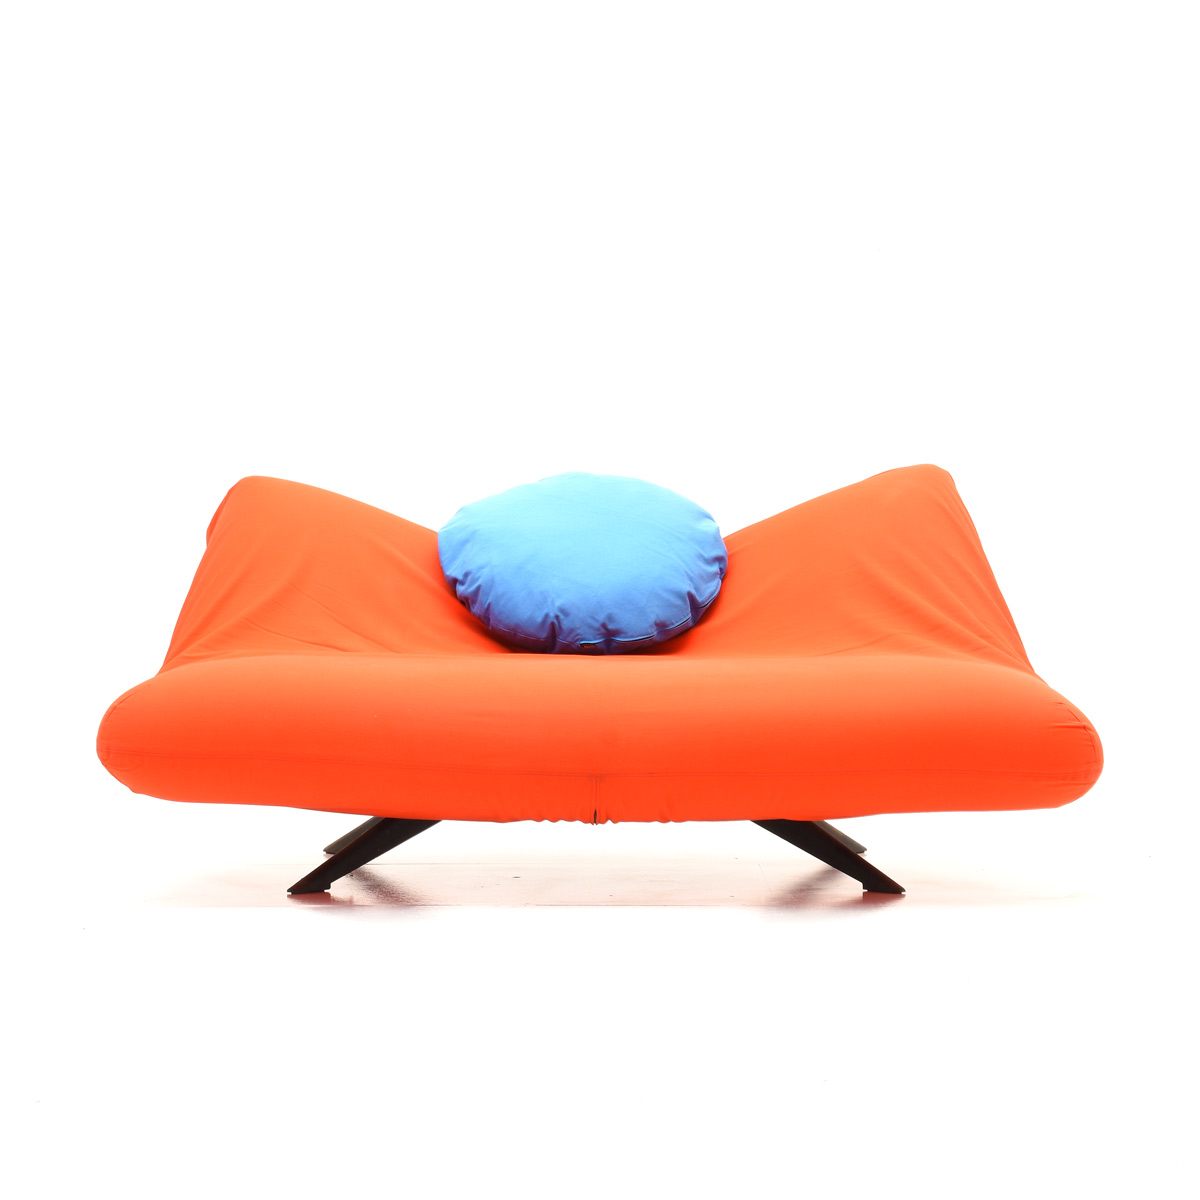 Sofa, Arflex, 80er Jahre - 2